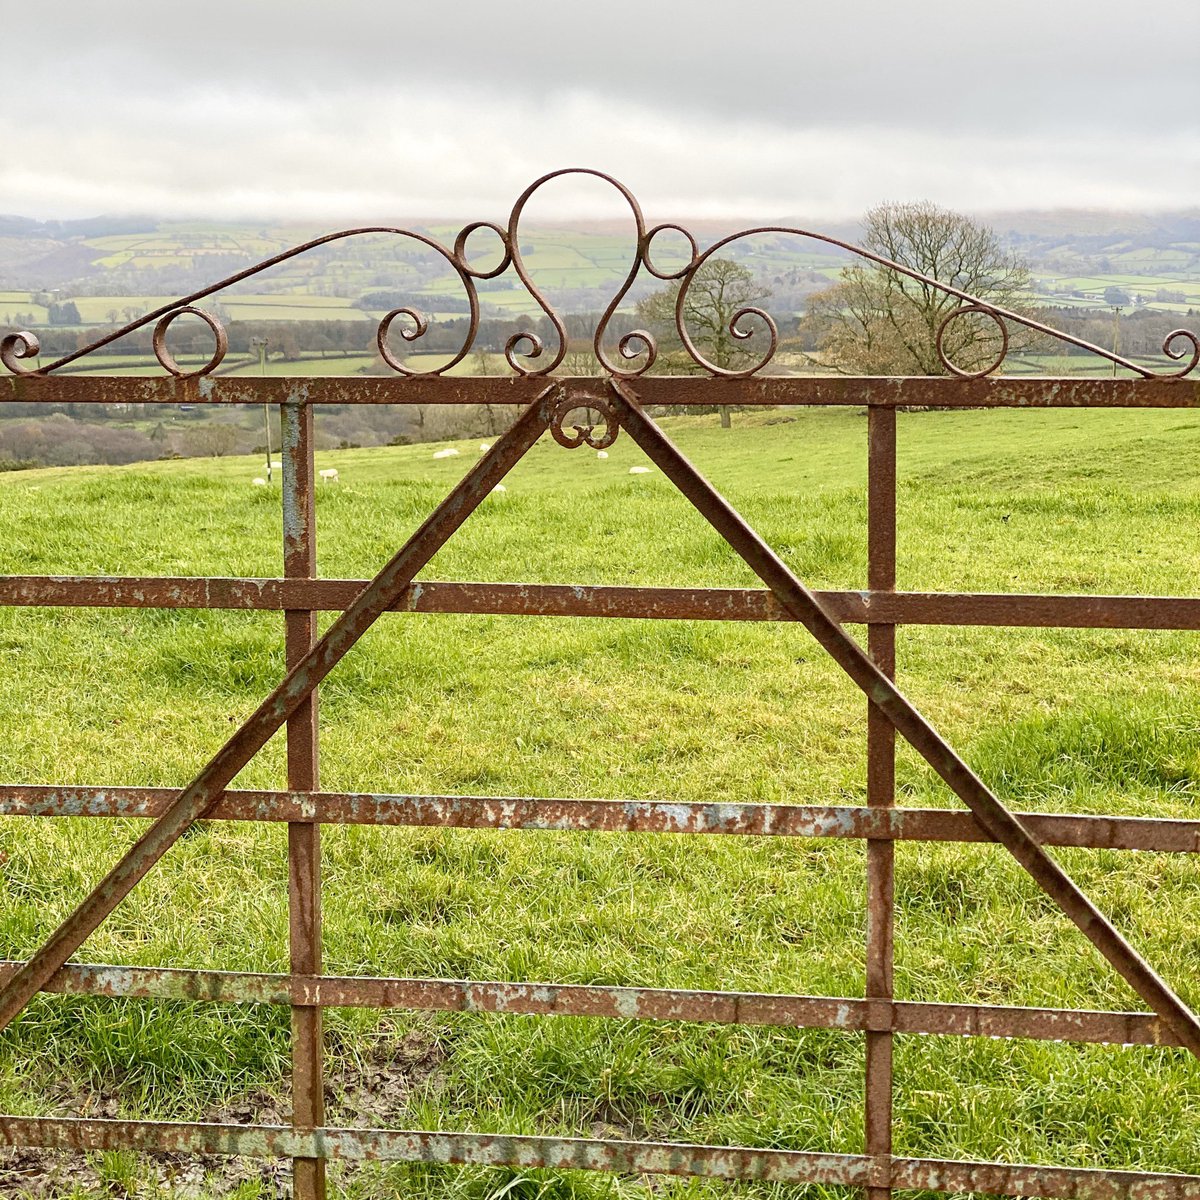 Welsh farm gate - Llanwenog.

#welshvernacularantiques #welshvernacular #farmgate #llanwenog #traditional #traditionalskills #welsh #anriques #anriquedealers #ceredigion #ceredigionbusiness